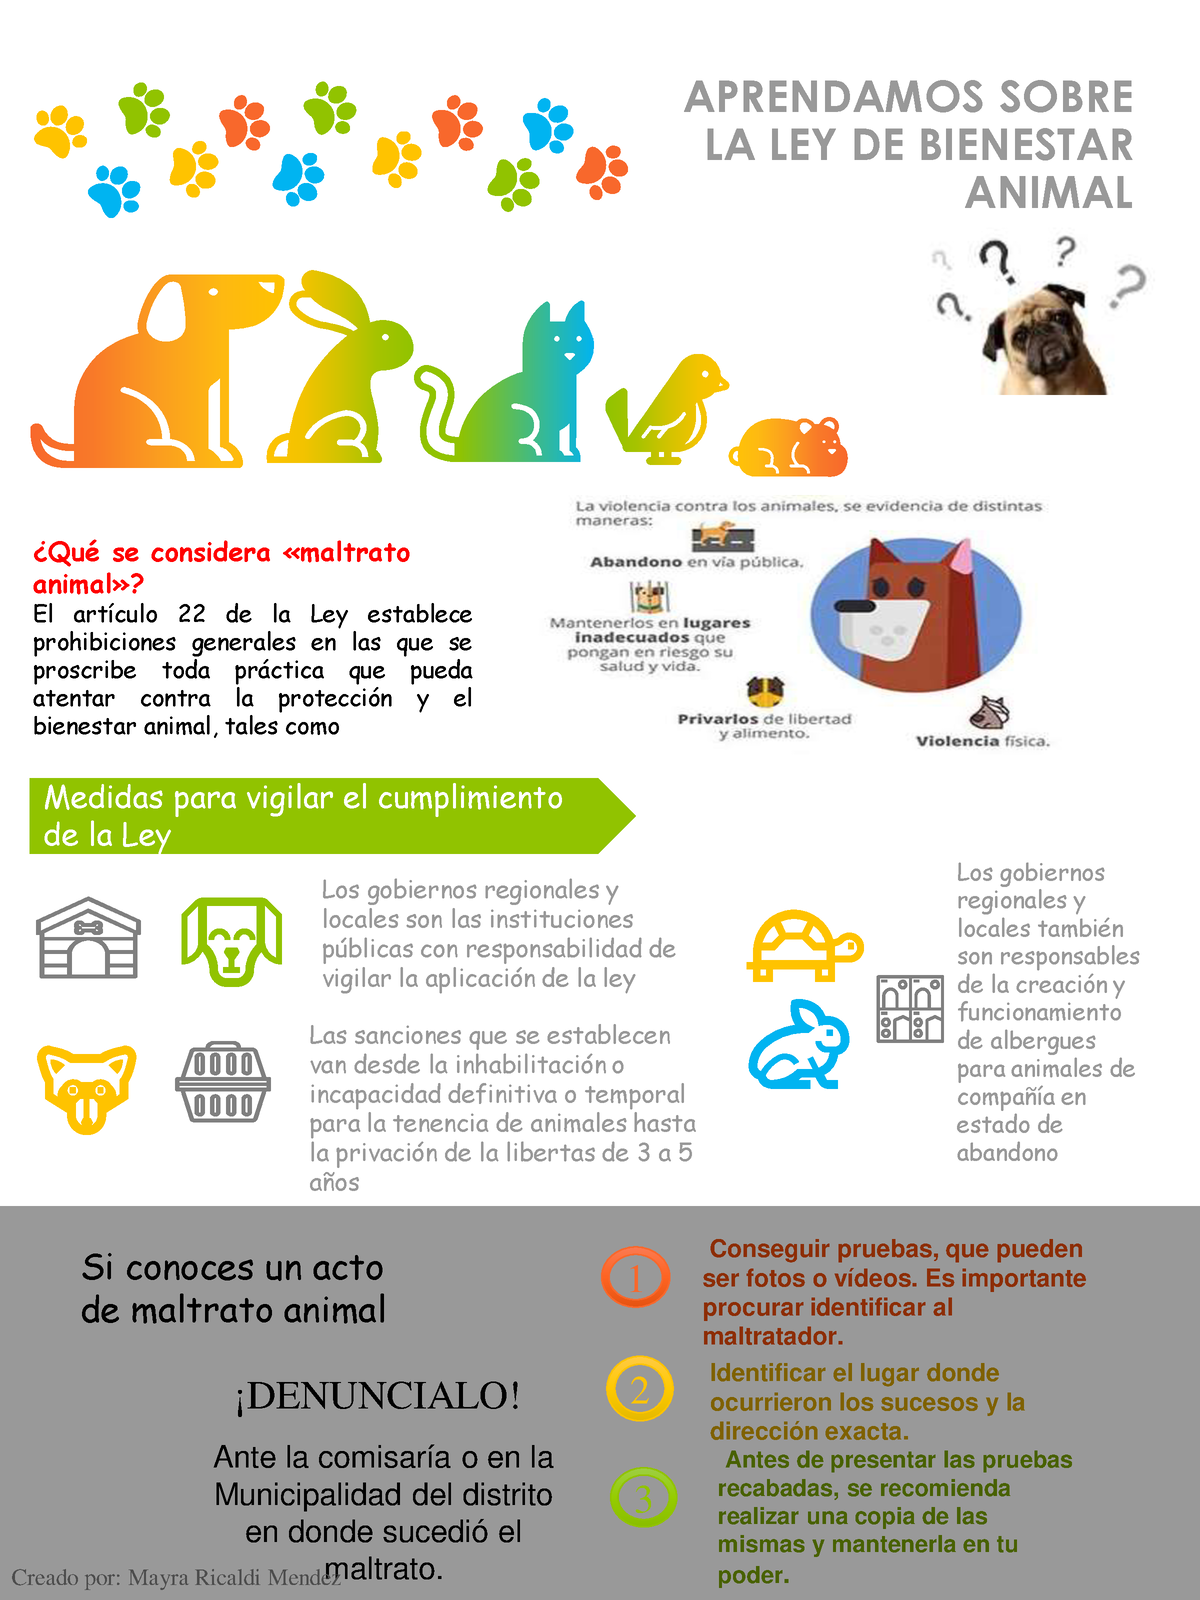 Infografia (ley de bienestar animal) APRENDAMOS SOBRE LA LEY DE